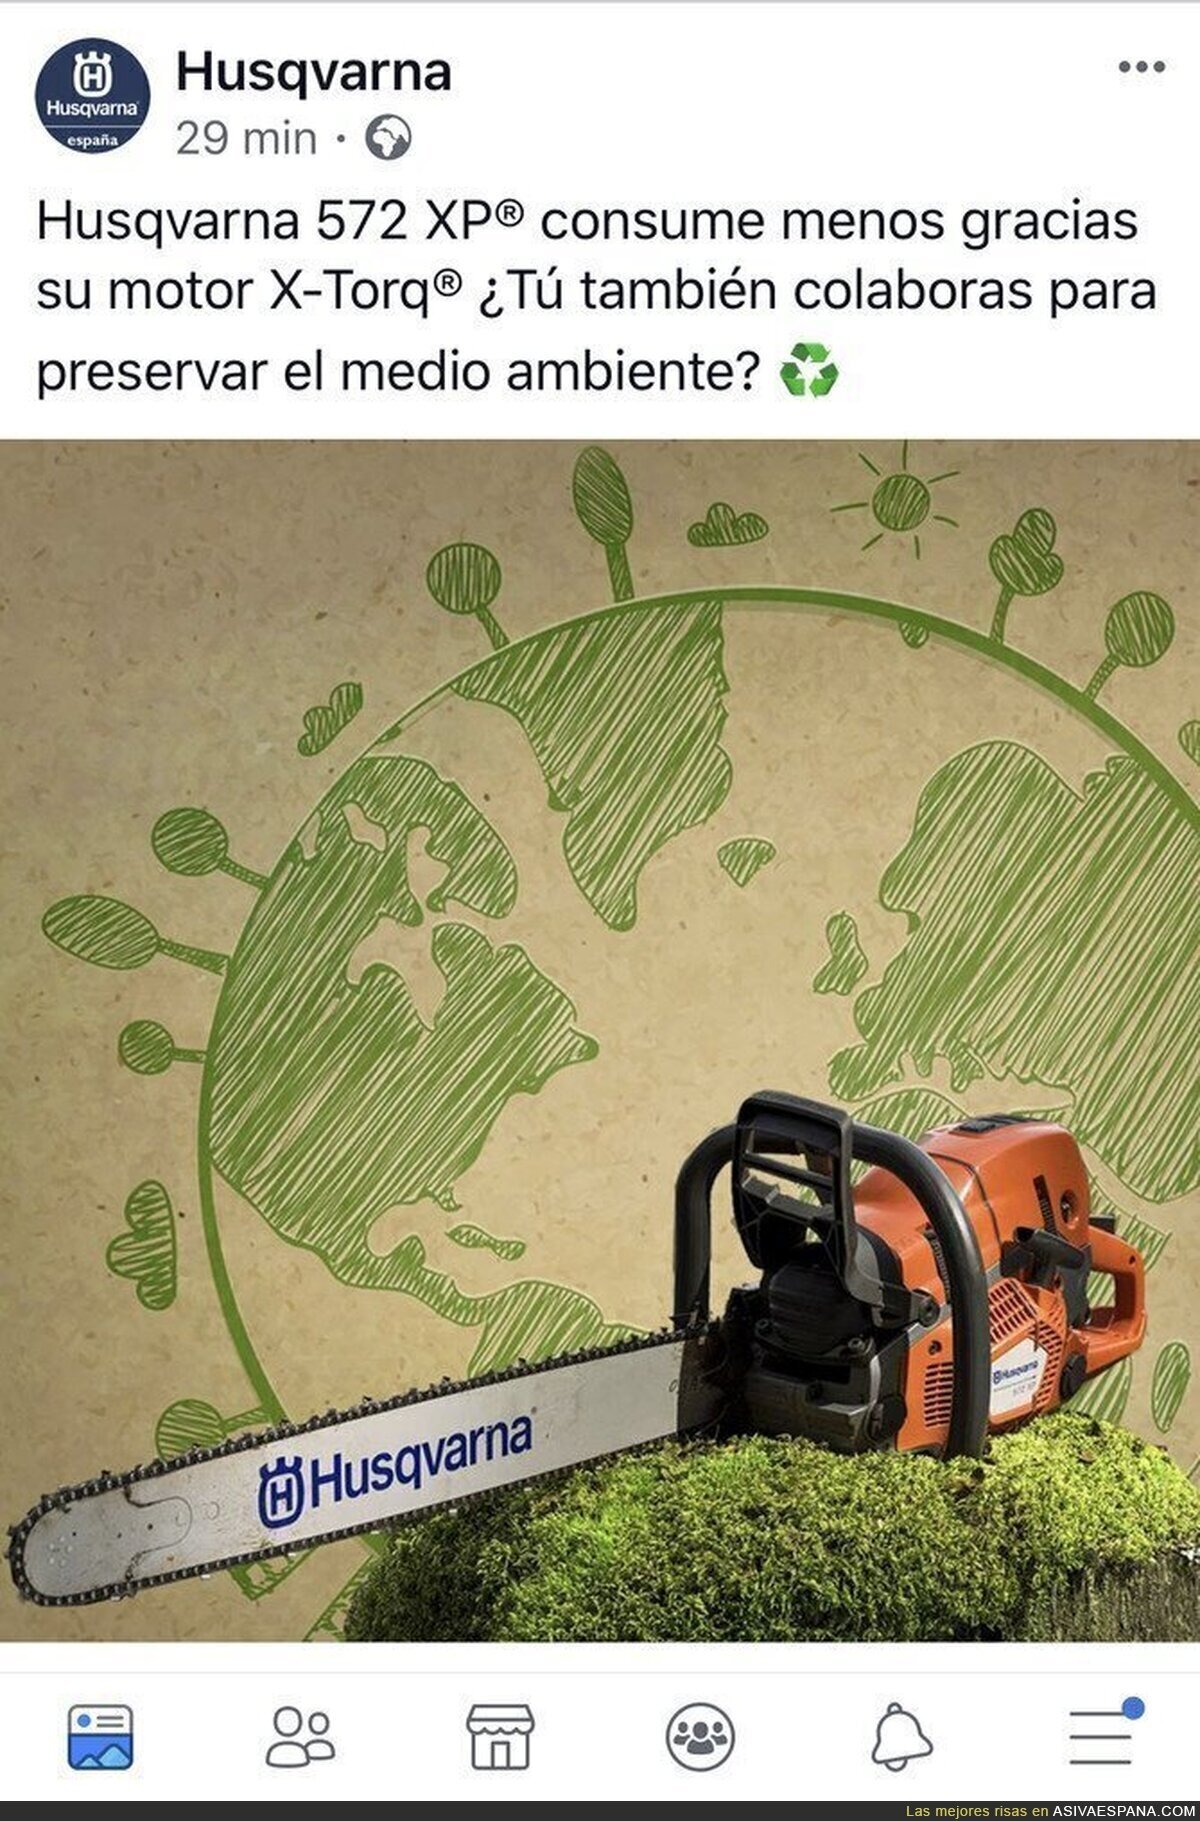 Una herramienta para la deforestación eco friendly